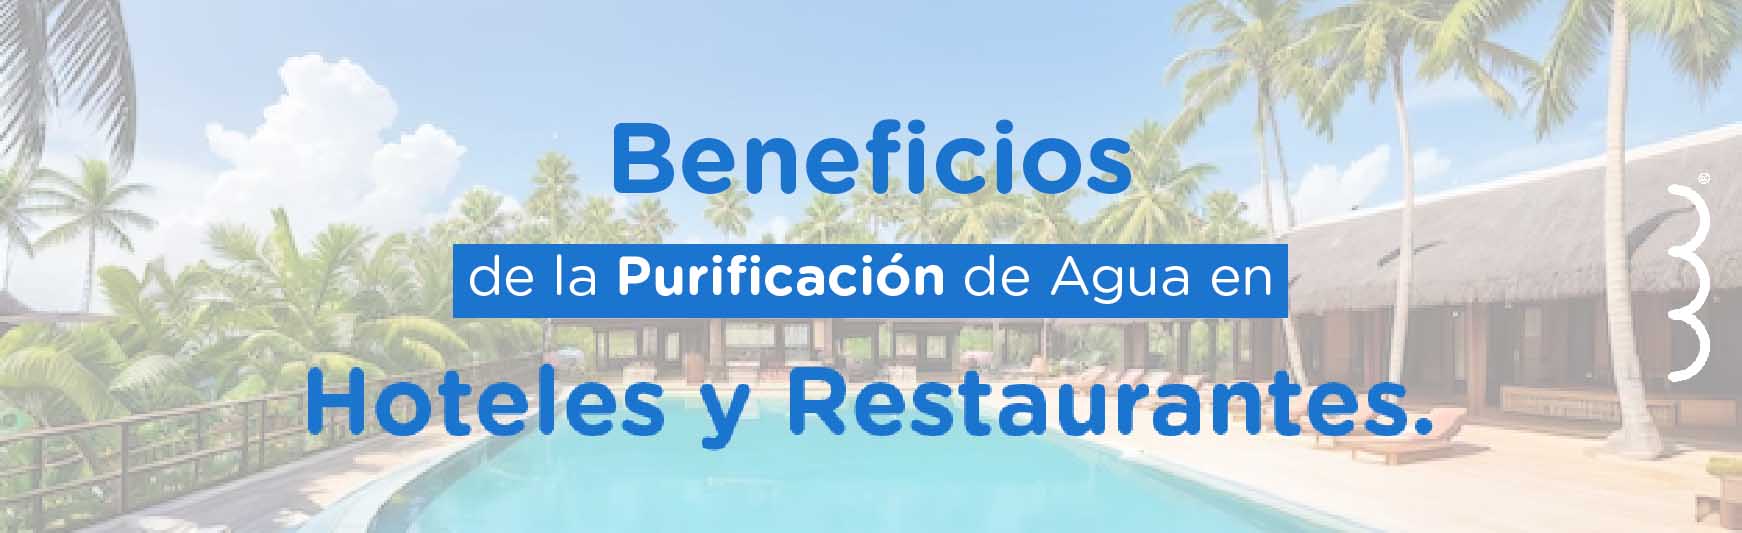 Beneficios de la Purificación de Agua en Hoteles y Restaurantes.